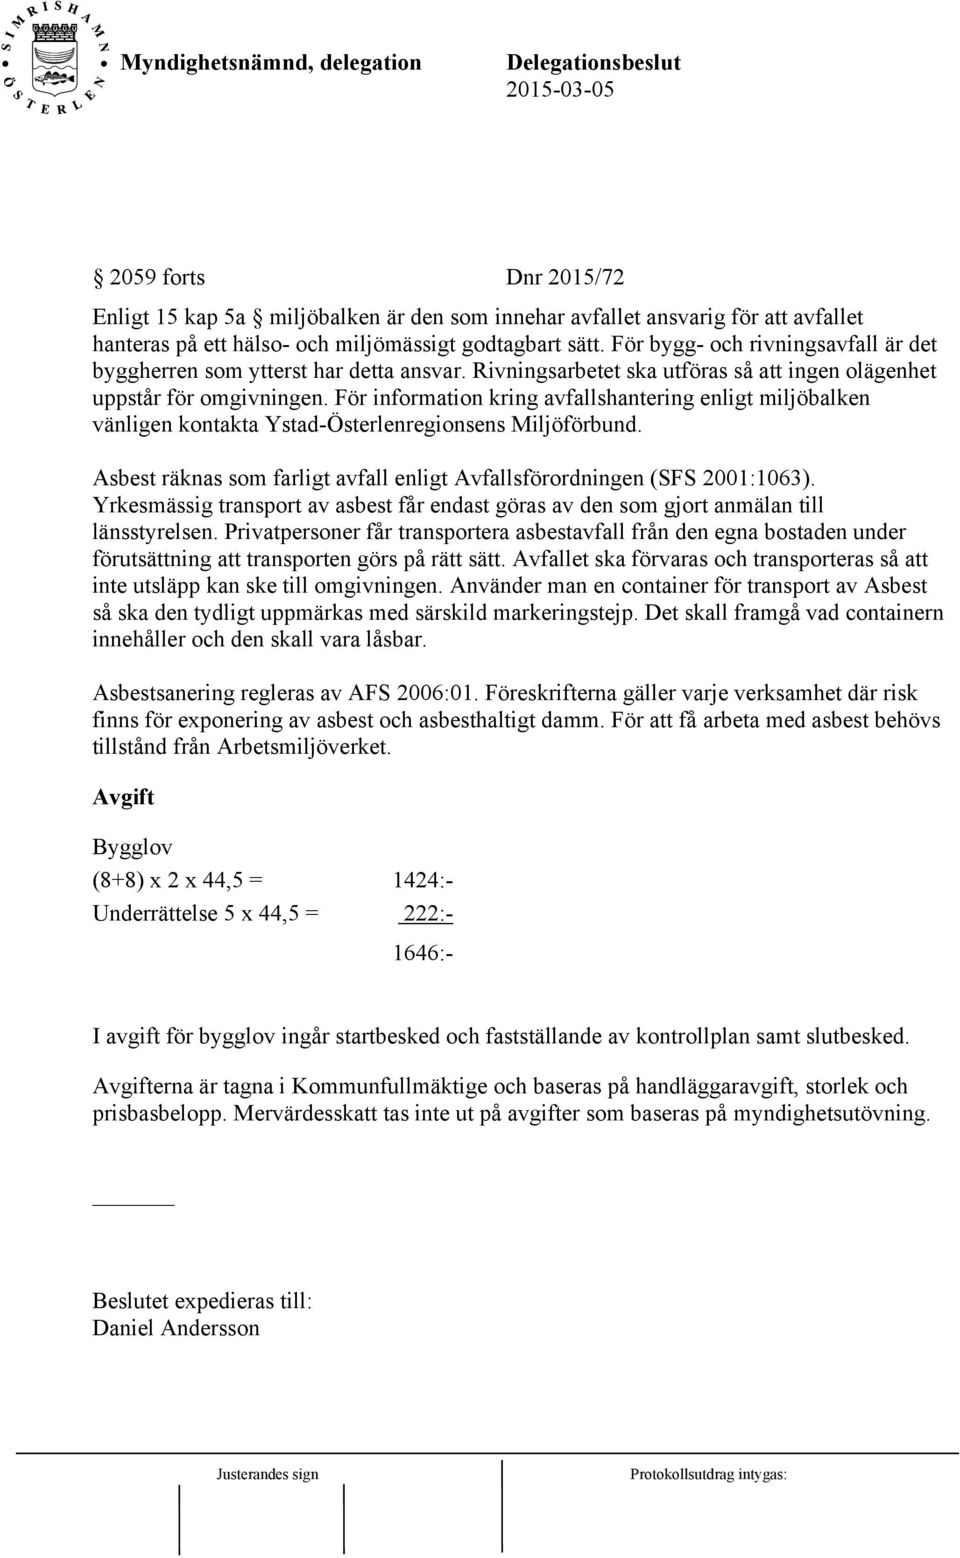 För information kring avfallshantering enligt miljöbalken vänligen kontakta Ystad-Österlenregionsens Miljöförbund. Asbest räknas som farligt avfall enligt Avfallsförordningen (SFS 2001:1063).